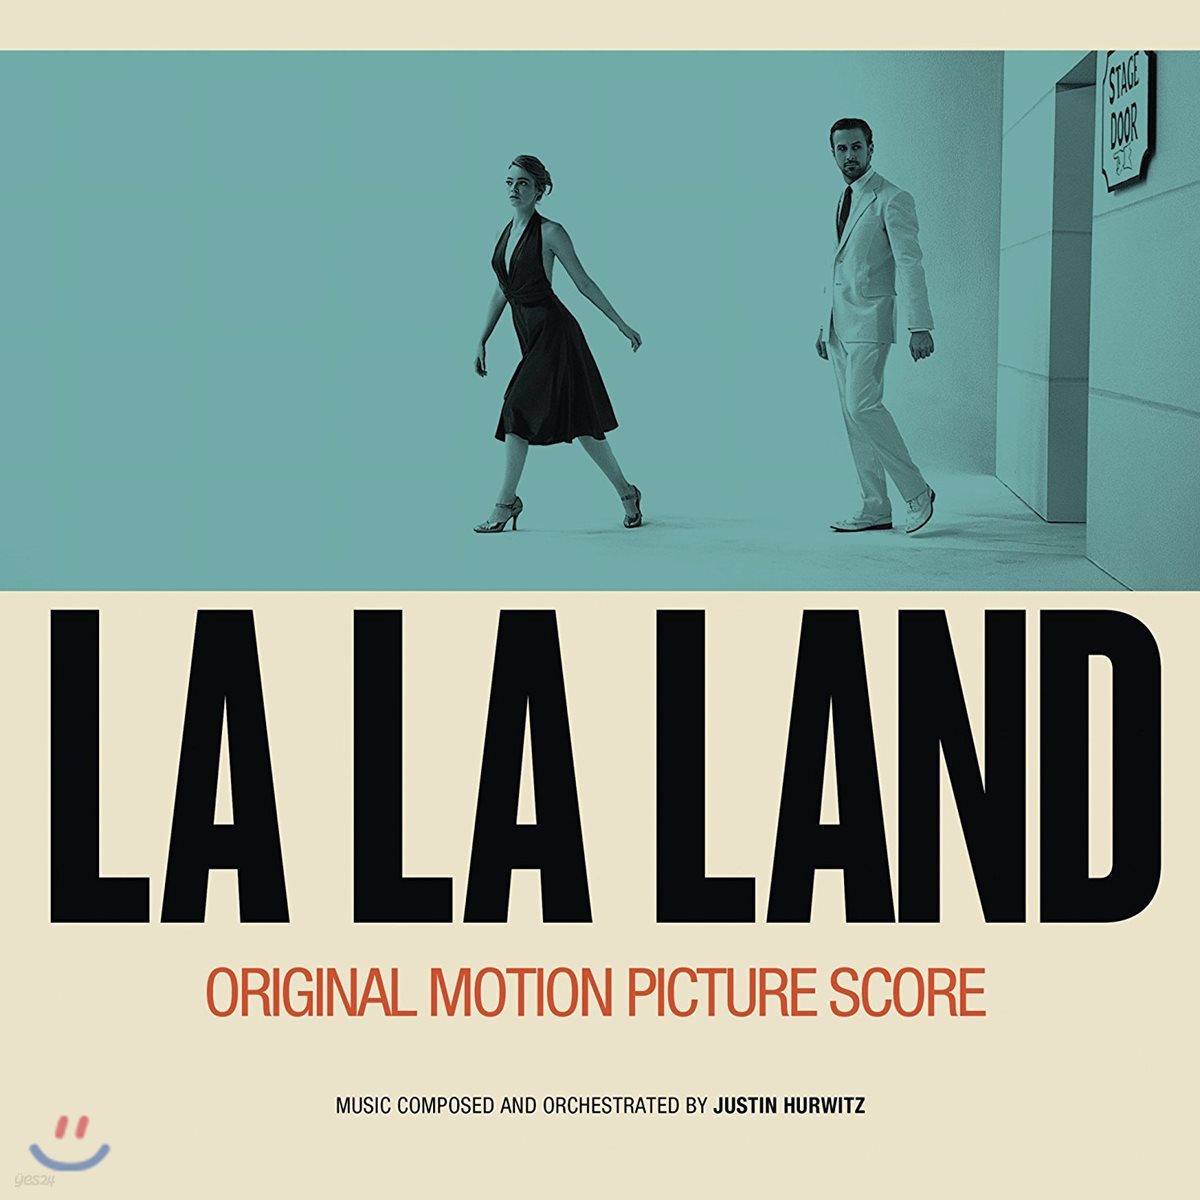 라라랜드 뮤지컬 영화 스코어 음반 (La La Land Score Album OST by Justin Hurwitz 저스틴 허위츠) [2LP]